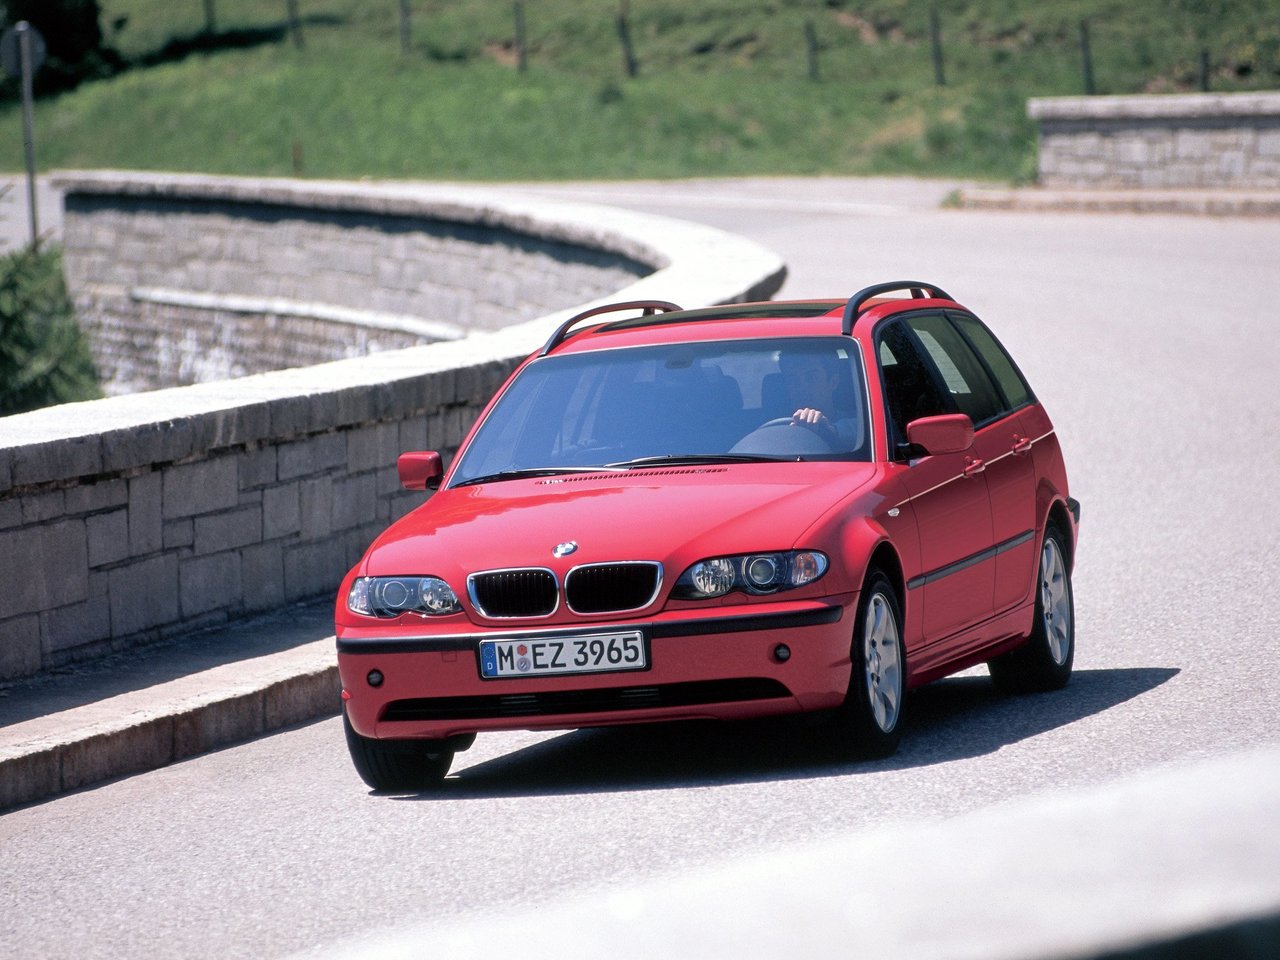 Расход газа двенадцати комплектаций универсала пять дверей BMW 3 серия. Разница стоимости заправки газом и бензином. Автономный пробег до и после установки ГБО.